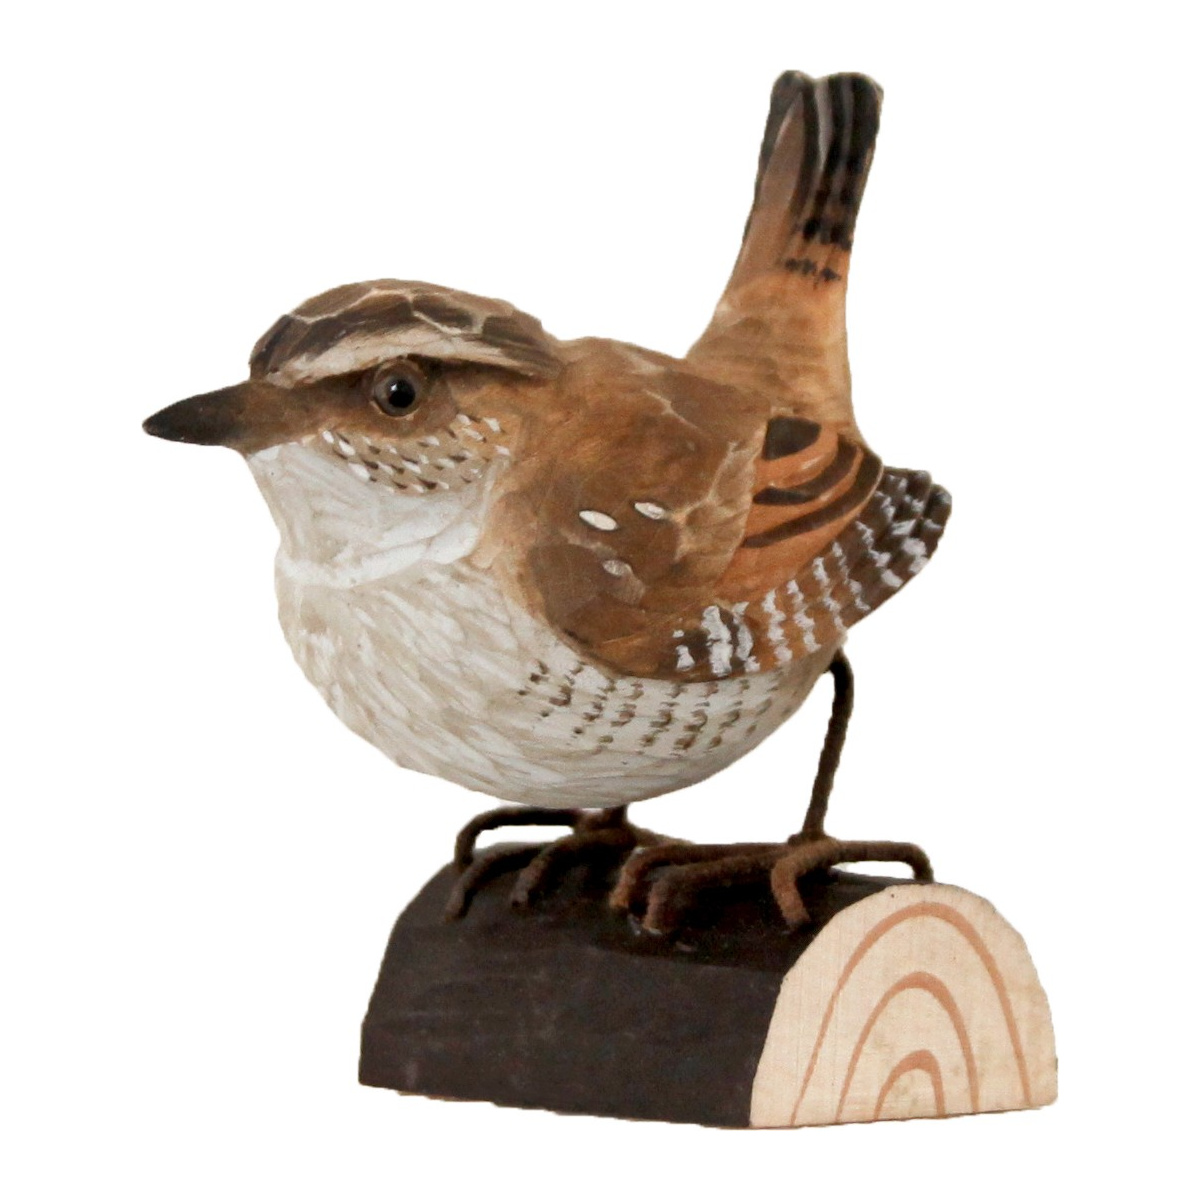 Wildlife Garden wood-carved bird - wren